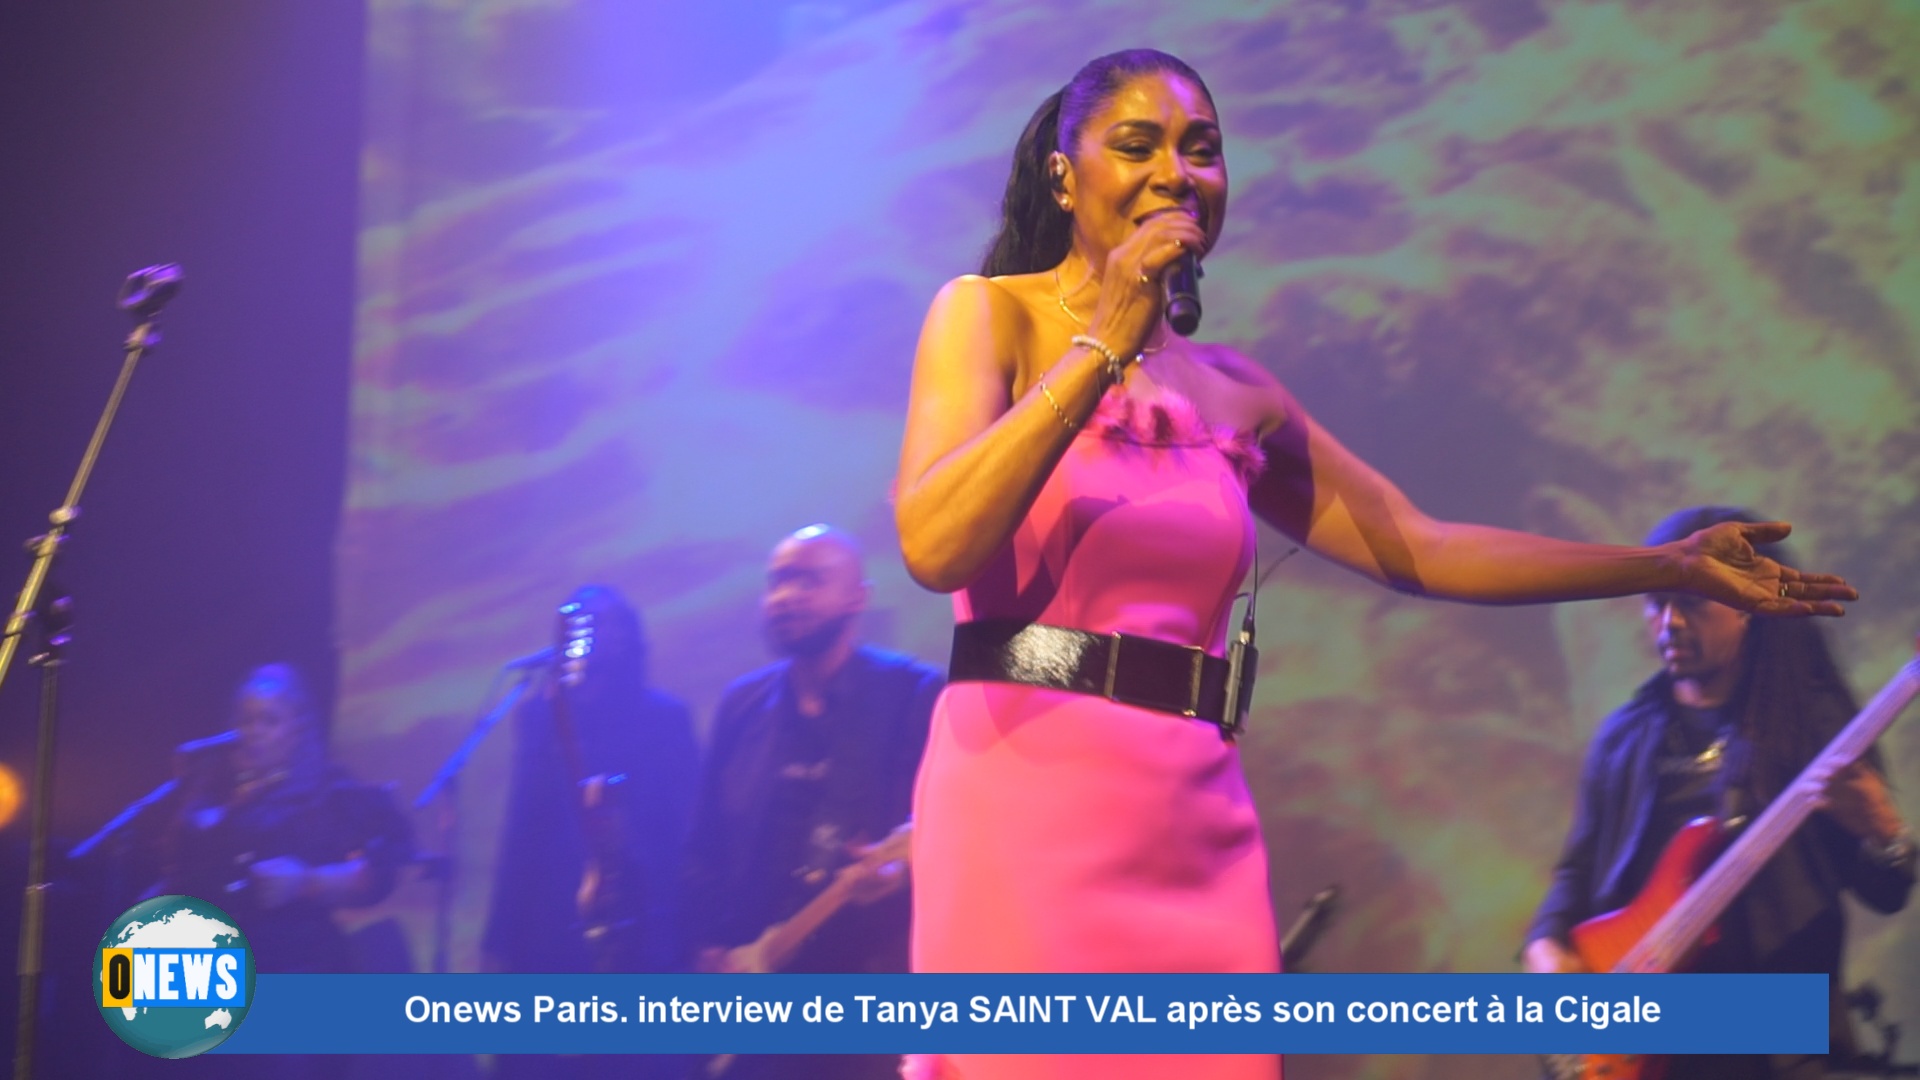 Onews Paris. interview de Tanya SAINT VAL après son concert à la Cigale